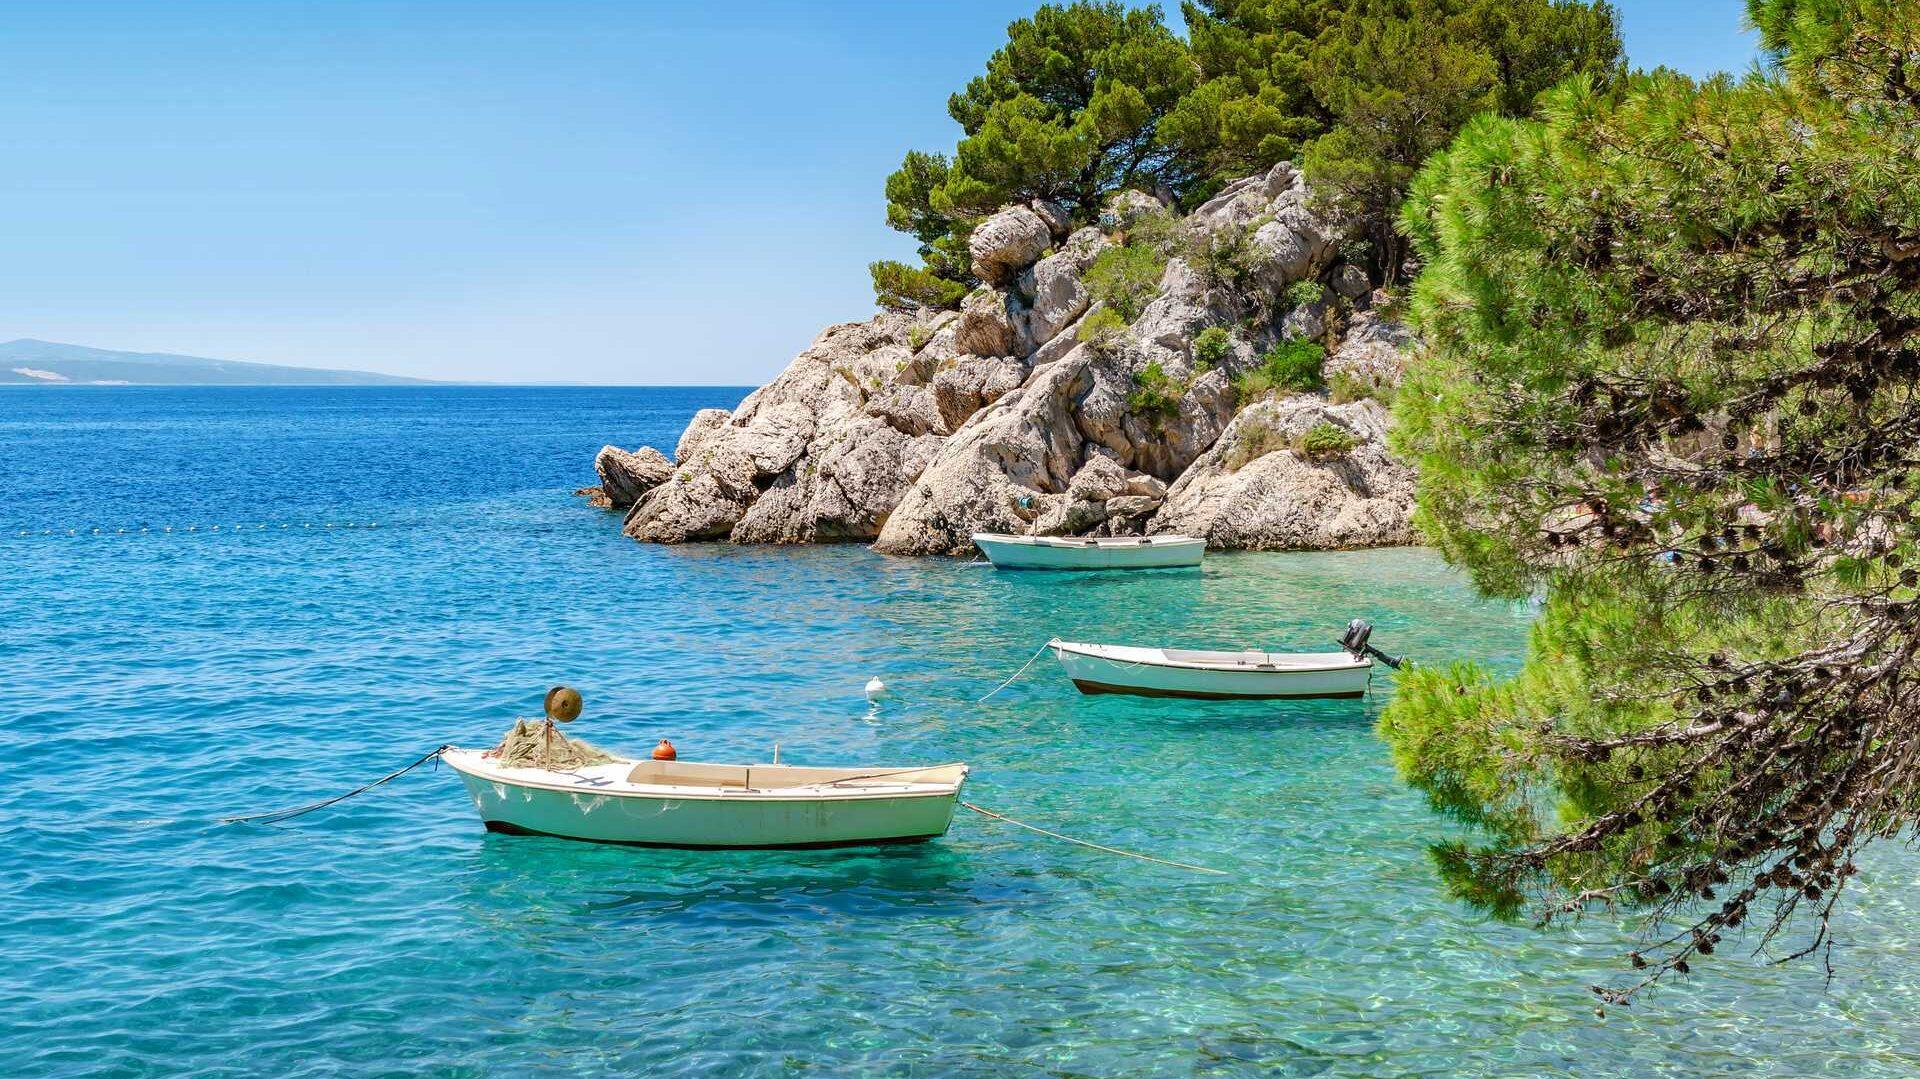 På bilde ser du et krystallklart hav utenfor kysten av feriefavoritten Kroatia. På bilde ser vi flott natur og 3 båter som flyter i havet. Nå kan du sikre deg billig sommerferie til Kroatia.